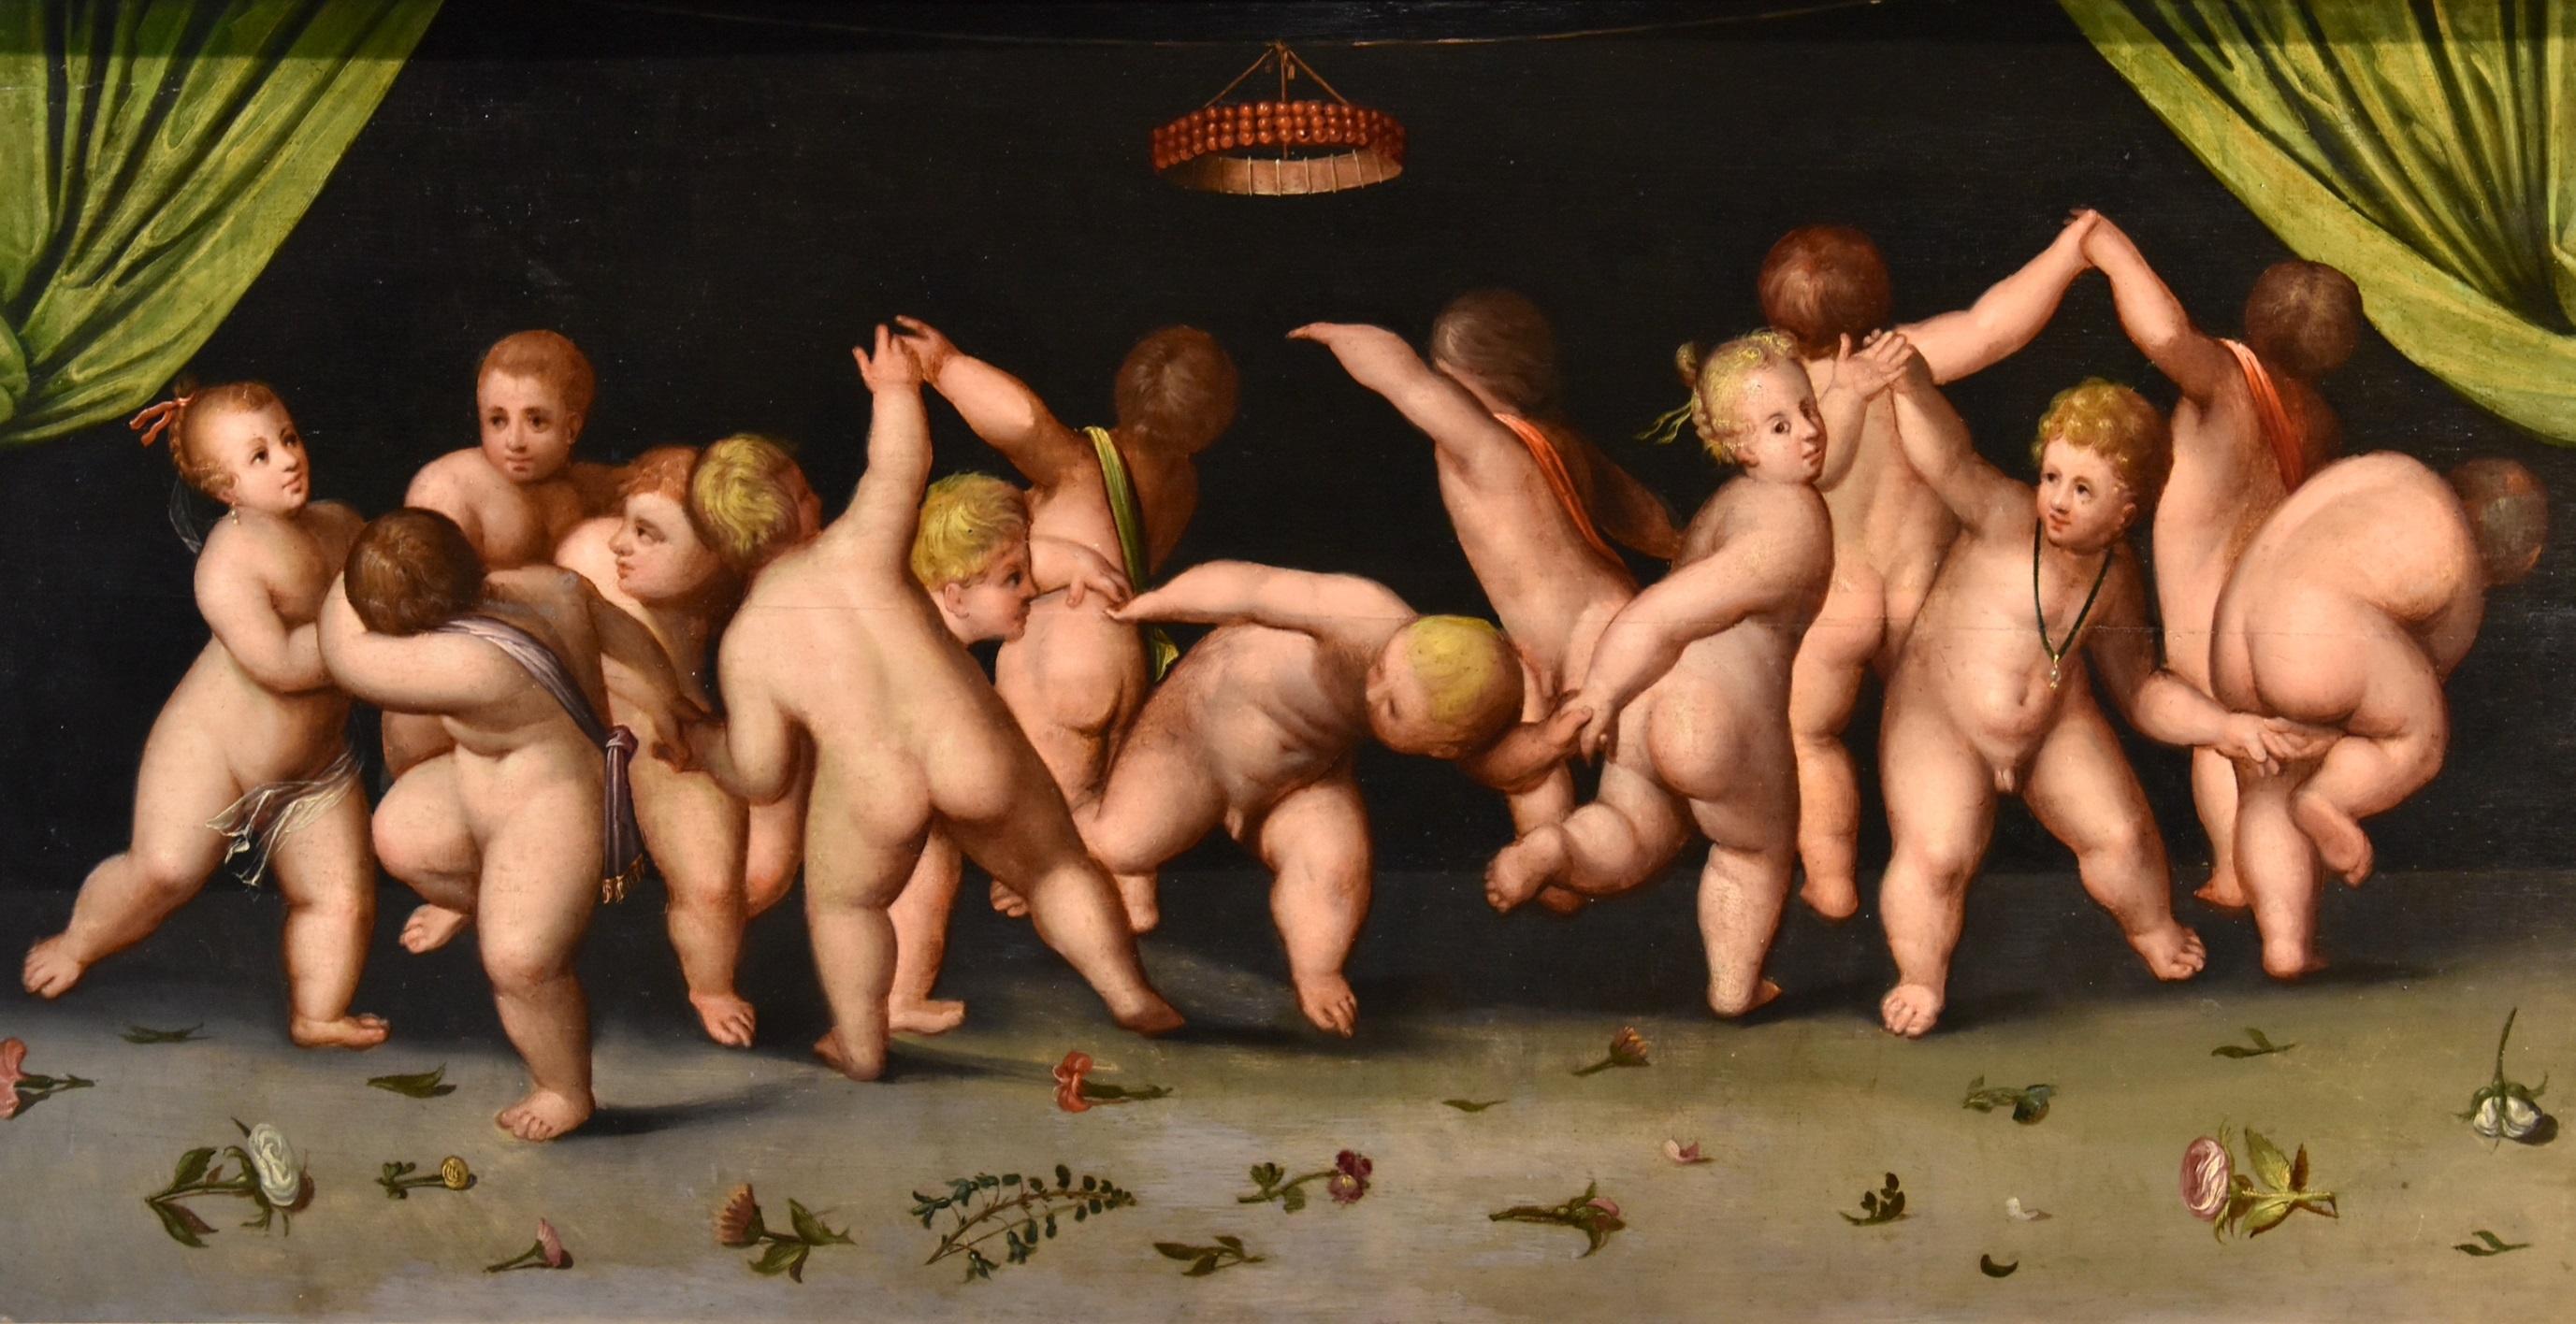 Tanz Putti Van Cleve Gemälde Öl auf Tafel 16. Jahrhundert Flämisch Altmeister Belgien – Painting von Cornelis Van Cleve (antwerp, 1520 - 1567) 